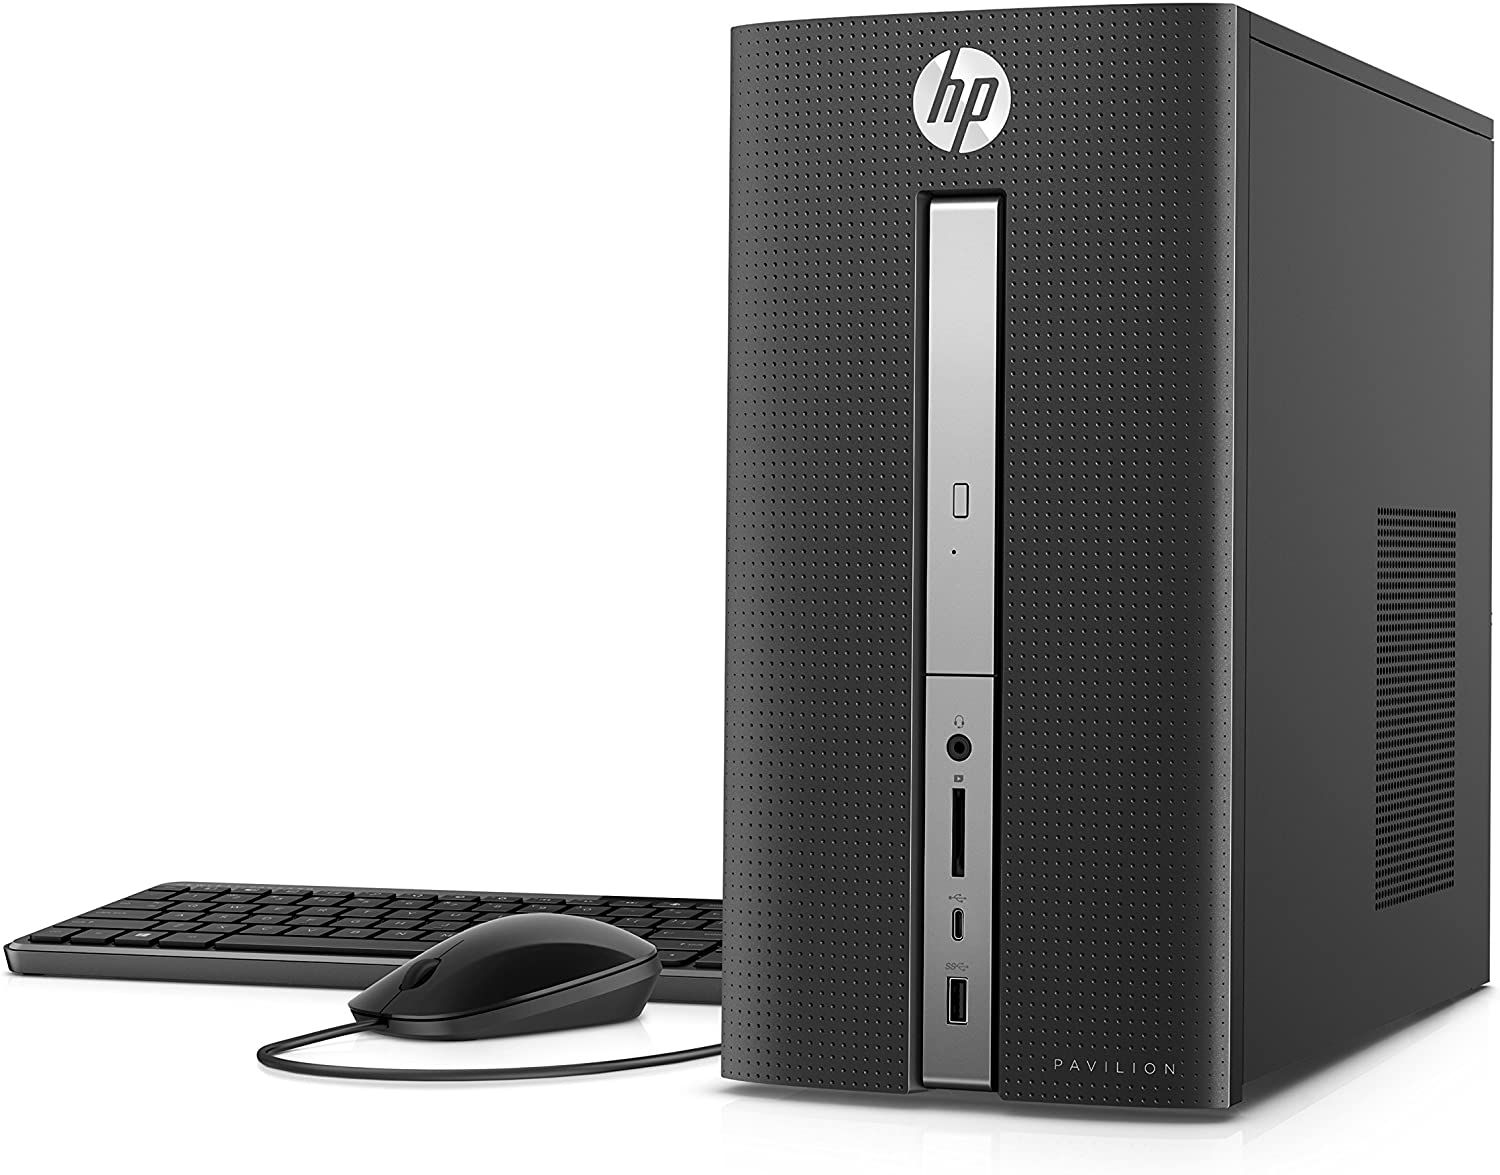 Premium High Performance Business Flagship HP Pavilion Desktop PC (2)